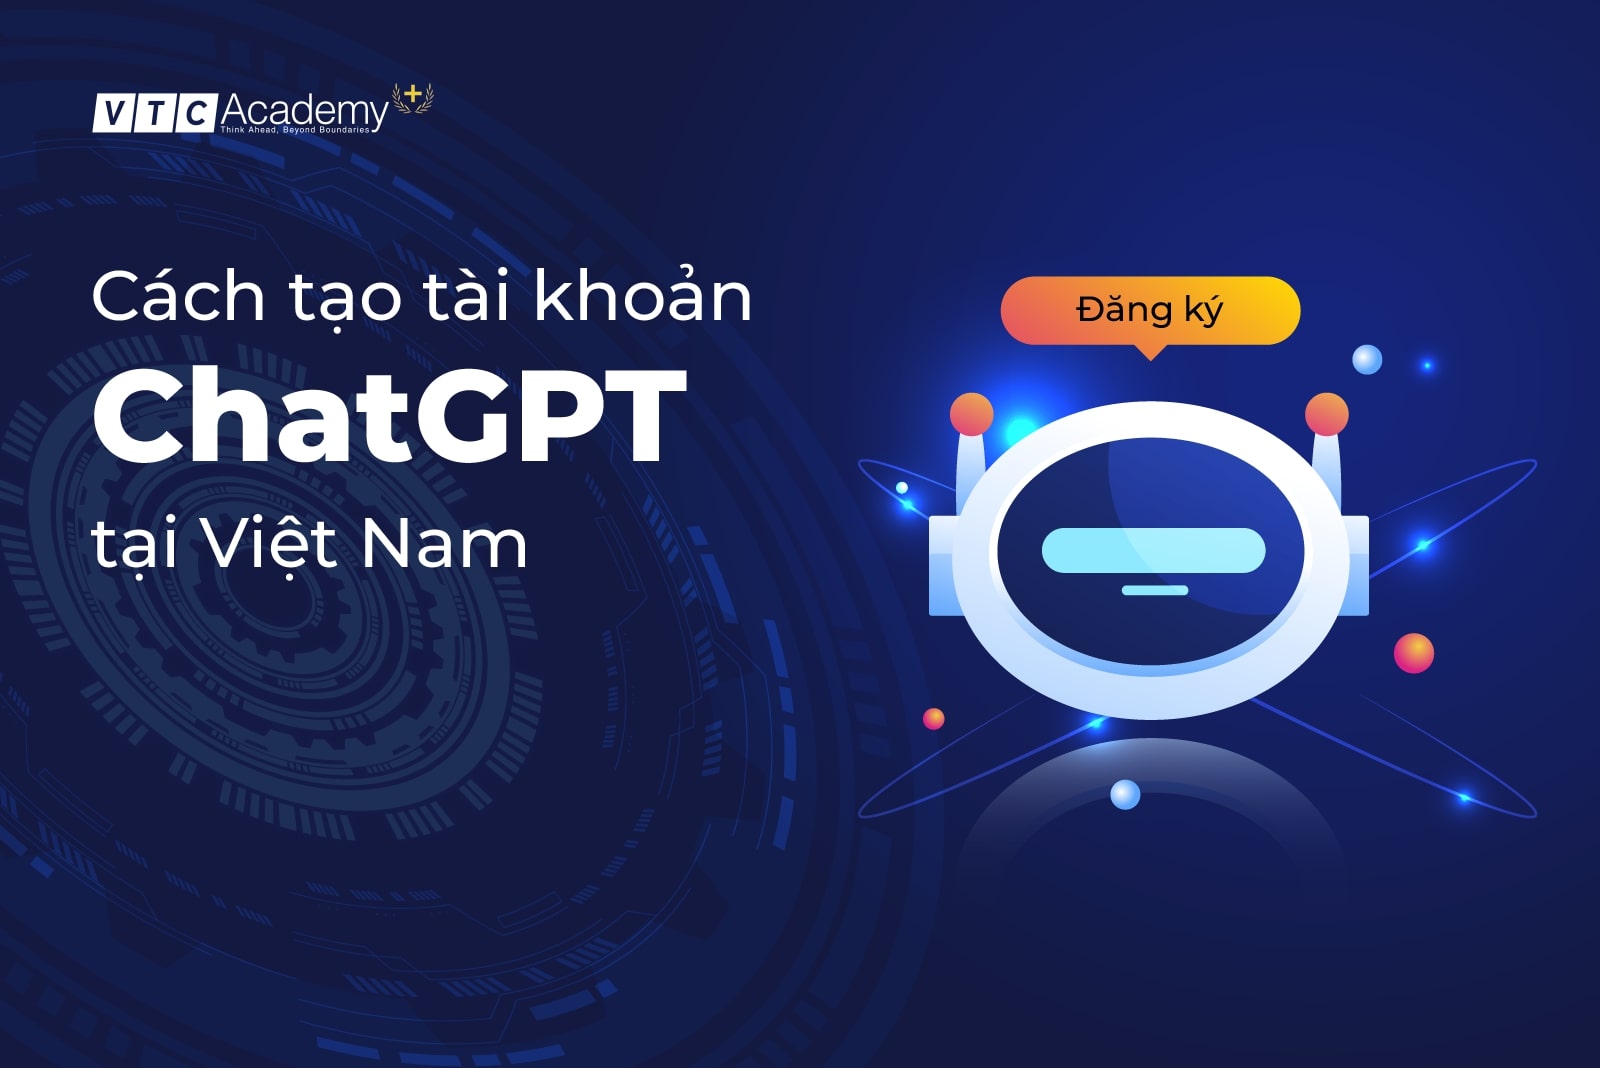 Cách tạo tài khoản chatGPT tại quốc gia chưa được hỗ trợ